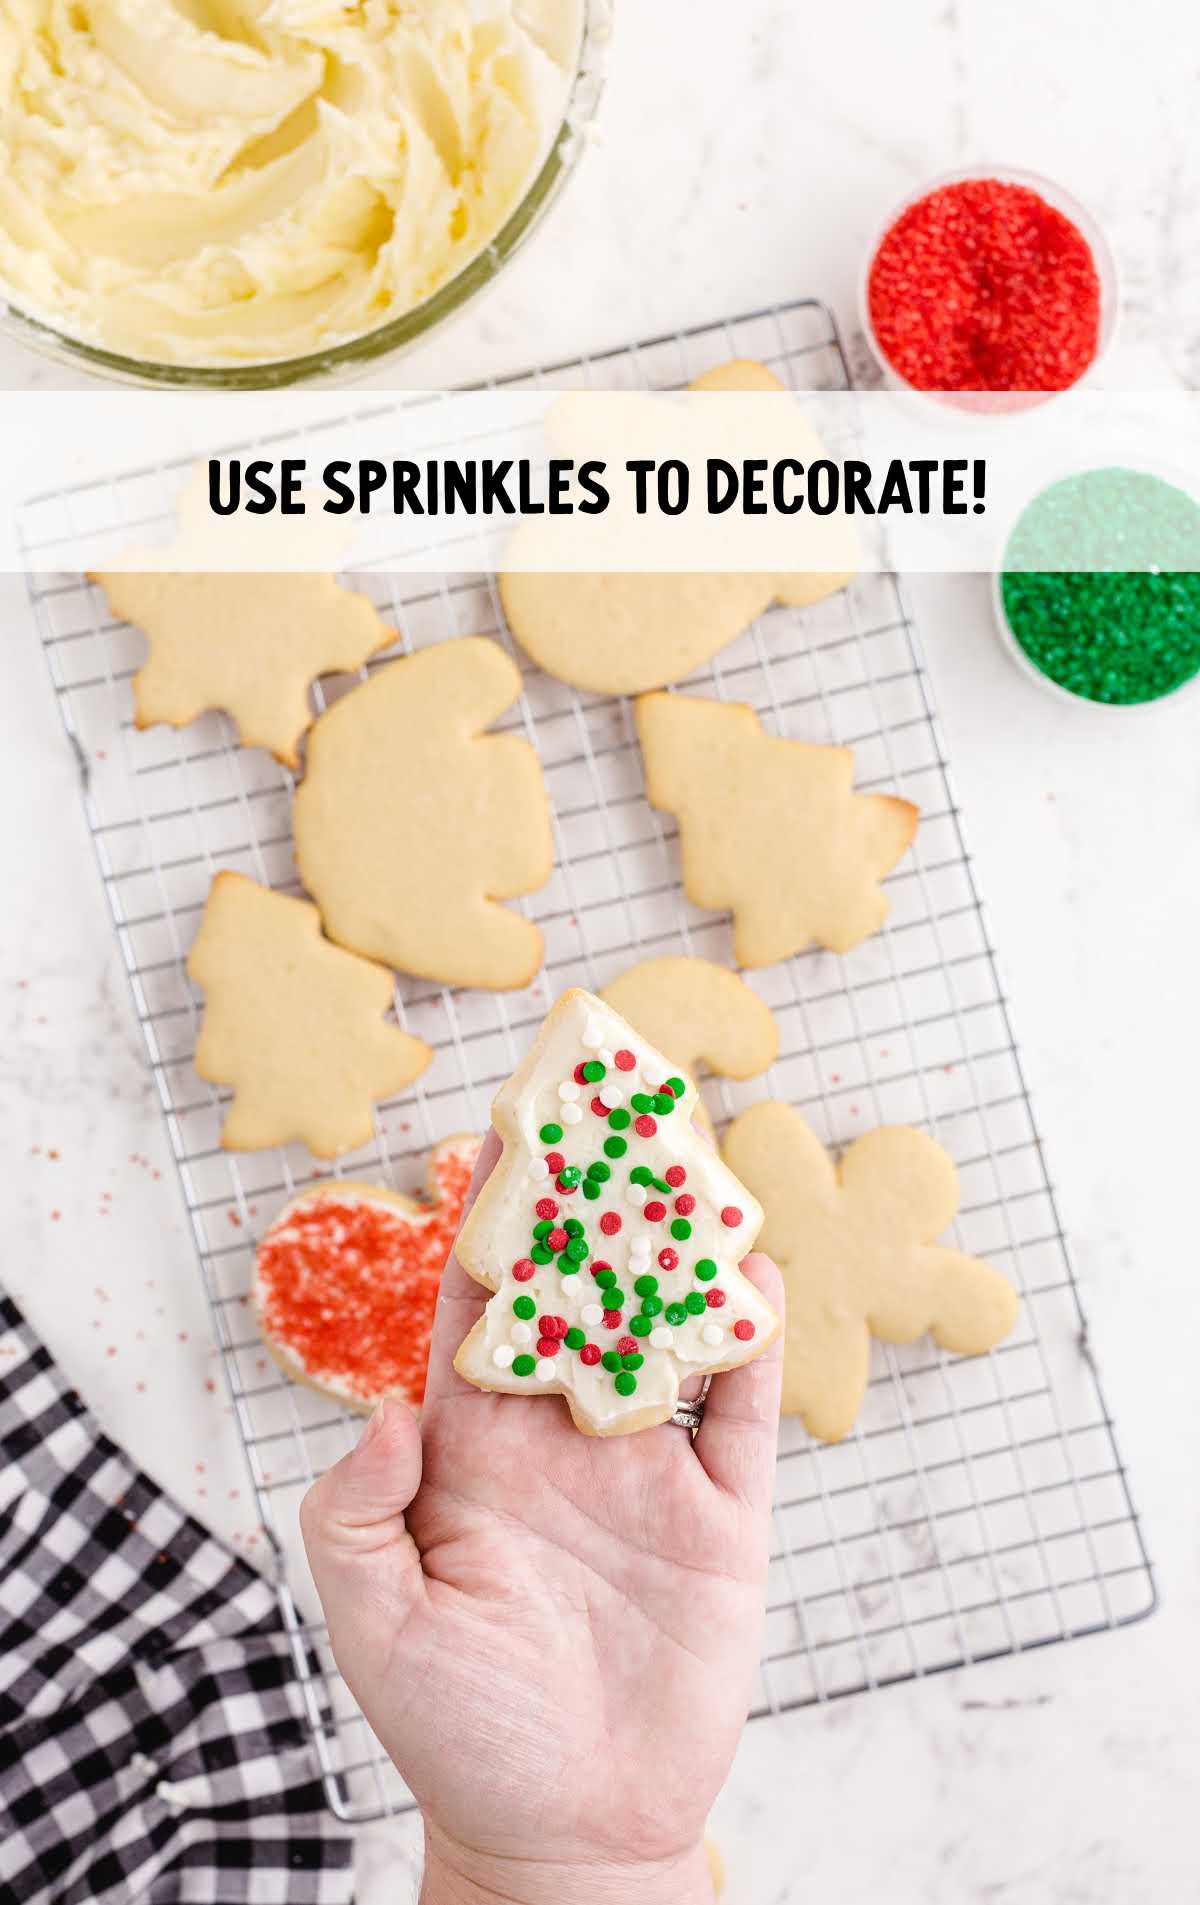 sprinkles sprinkled on the cookies